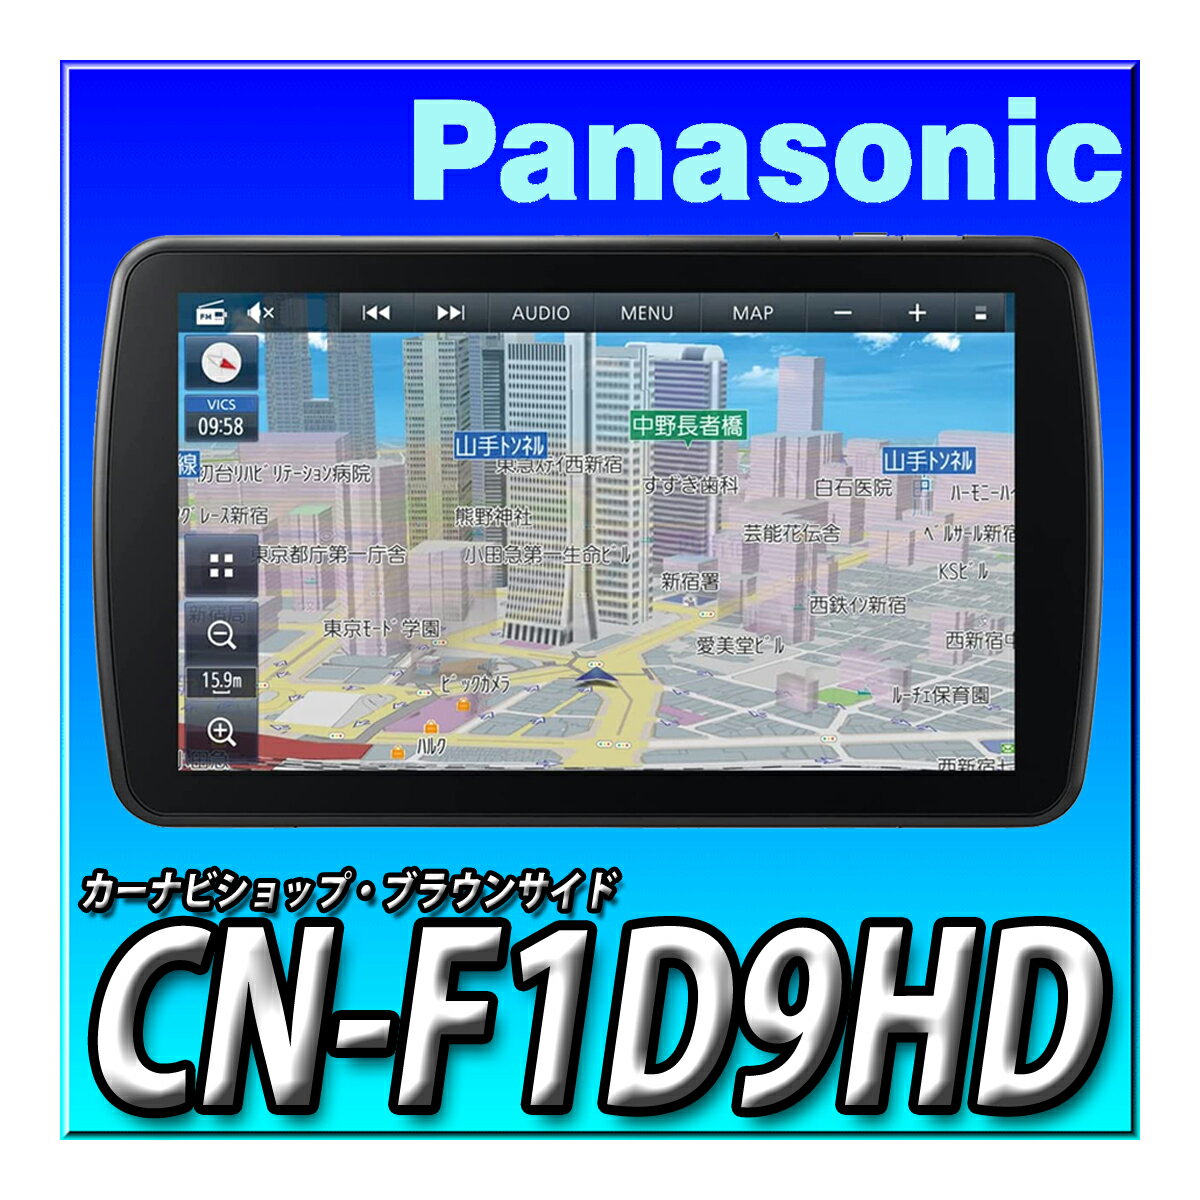 CN-F1D9HD パナソニック(Panasonic) カーナビ ストラーダ 9インチ 有機ELディスプレイ 430車種に対応 フルセグ 無料地図更新 ドラレコ連携